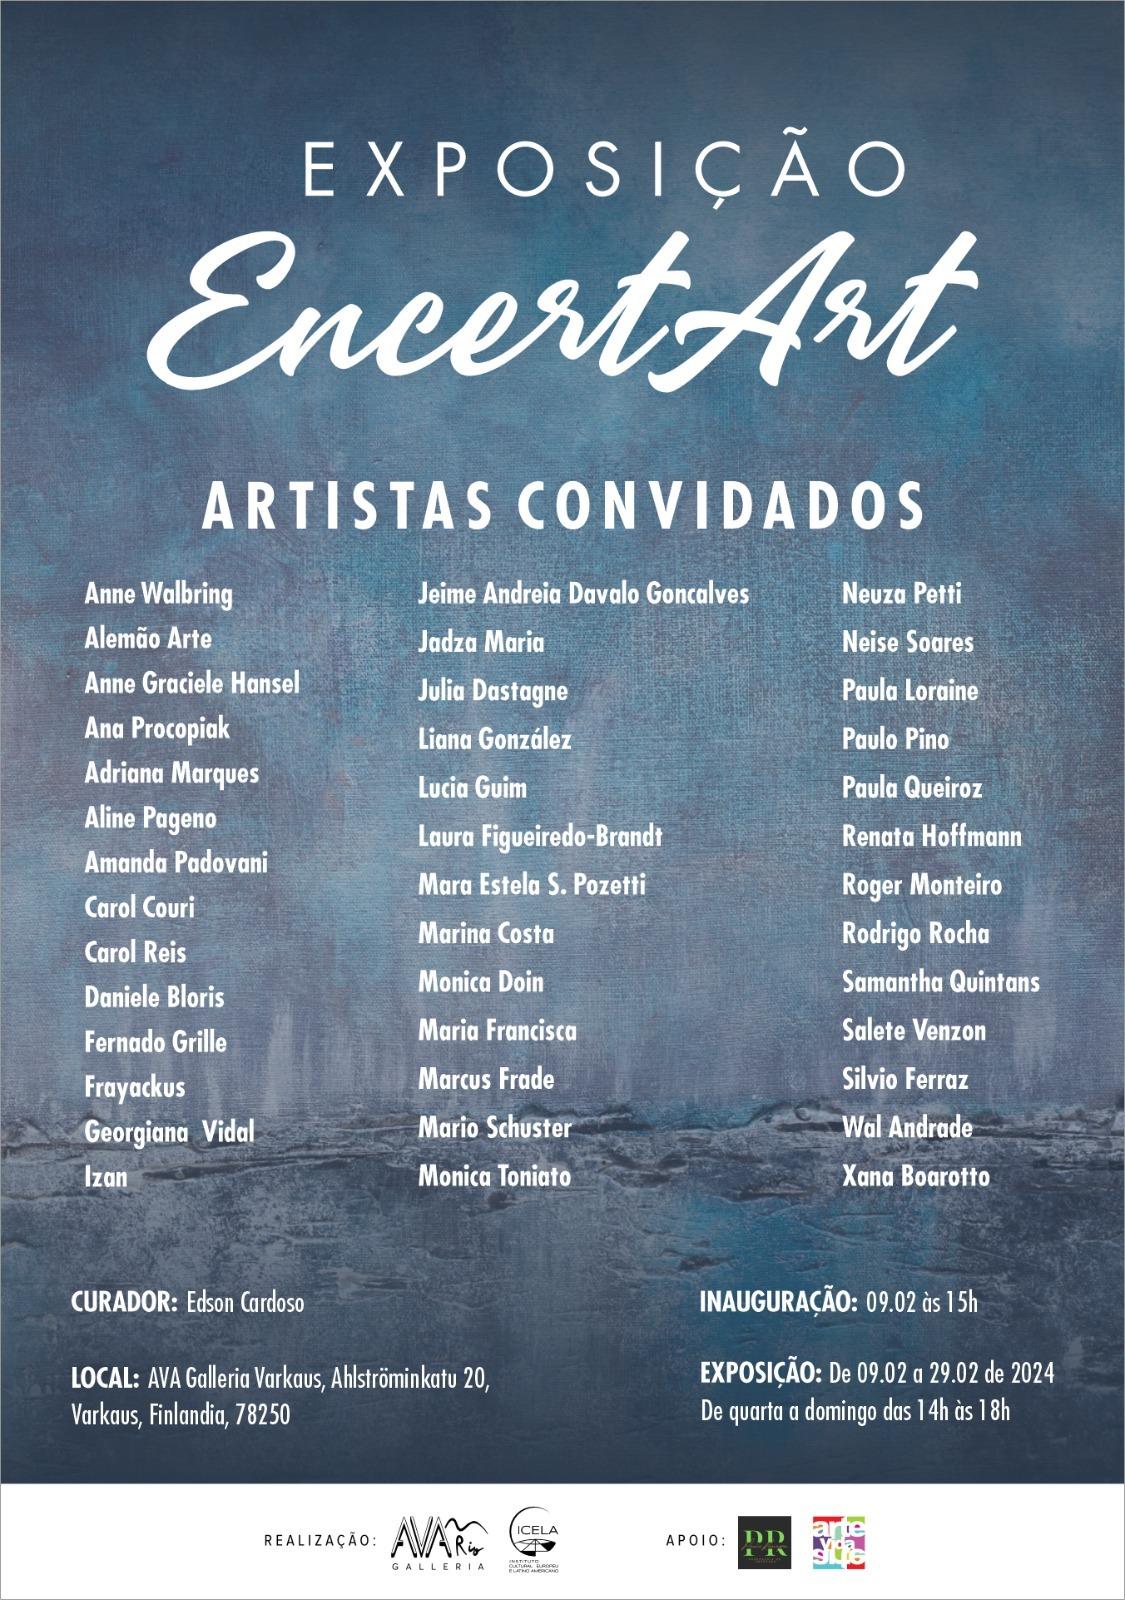 A Vanguarda Artística Revelada: Exposição “EncertArt” na Ava Galleria Varkaus